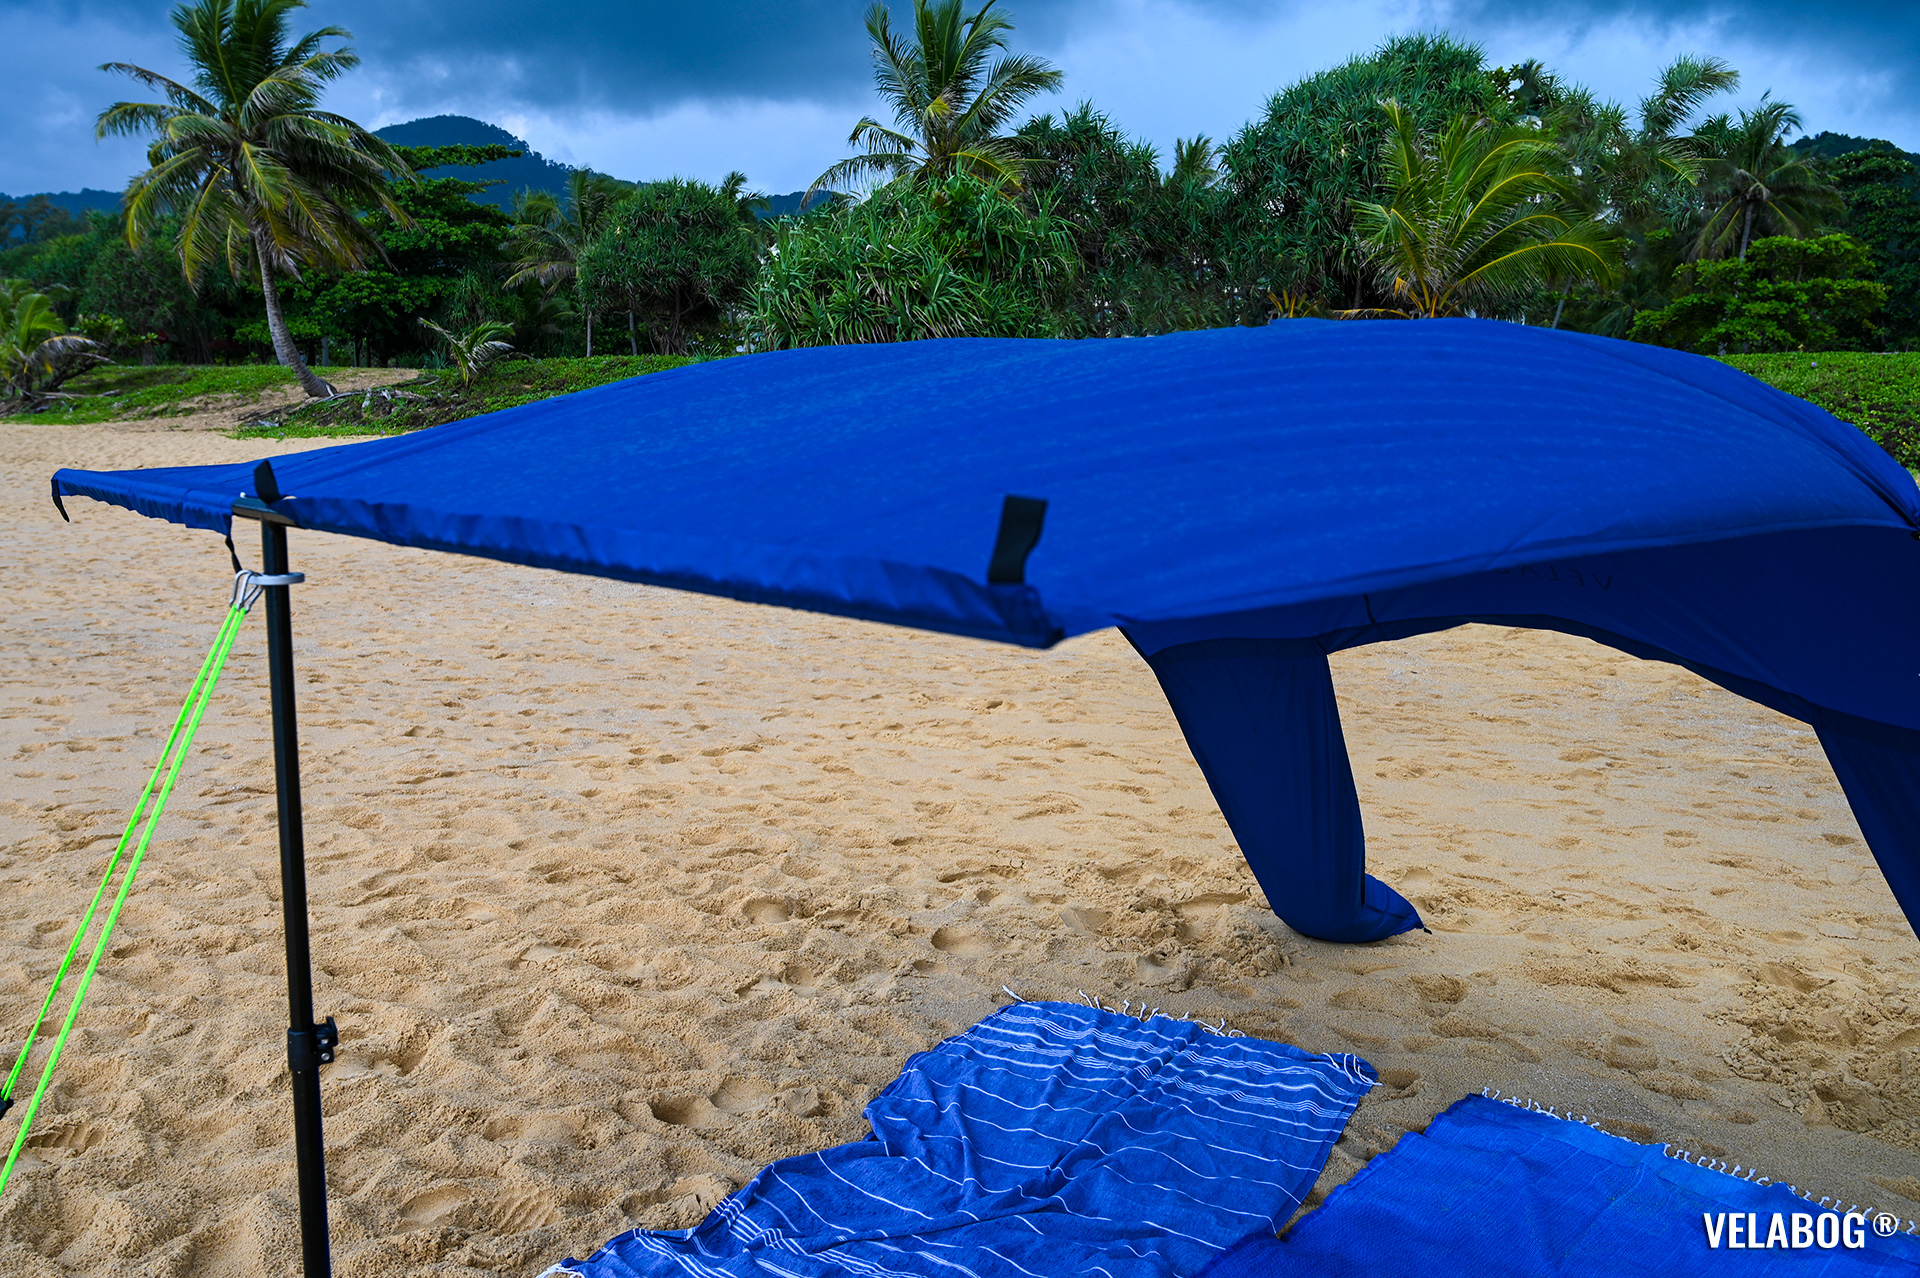 Солнечный парус Velabog «Breeze» синий на пляже в Таиланде во время дождя. Лучшее укрытие от солнца и дождя на пляже. Вариант установки при слабом или сильном ветре. Вид спереди, детали.